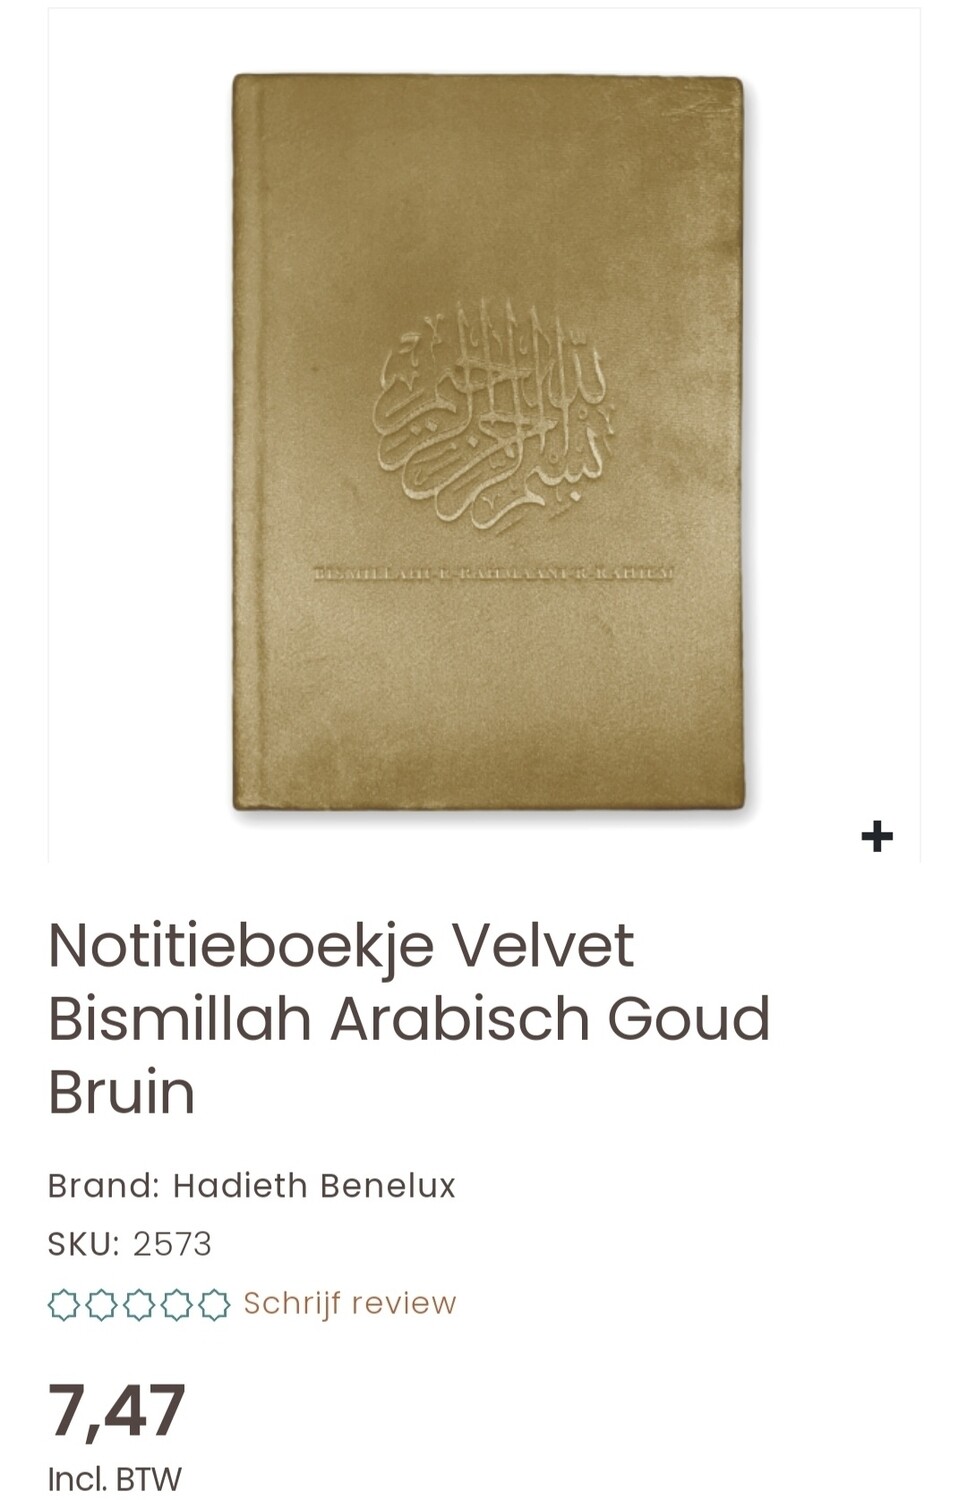 Notitieboekje Bismillah bruin-goudkleurig   velour met lijntjes